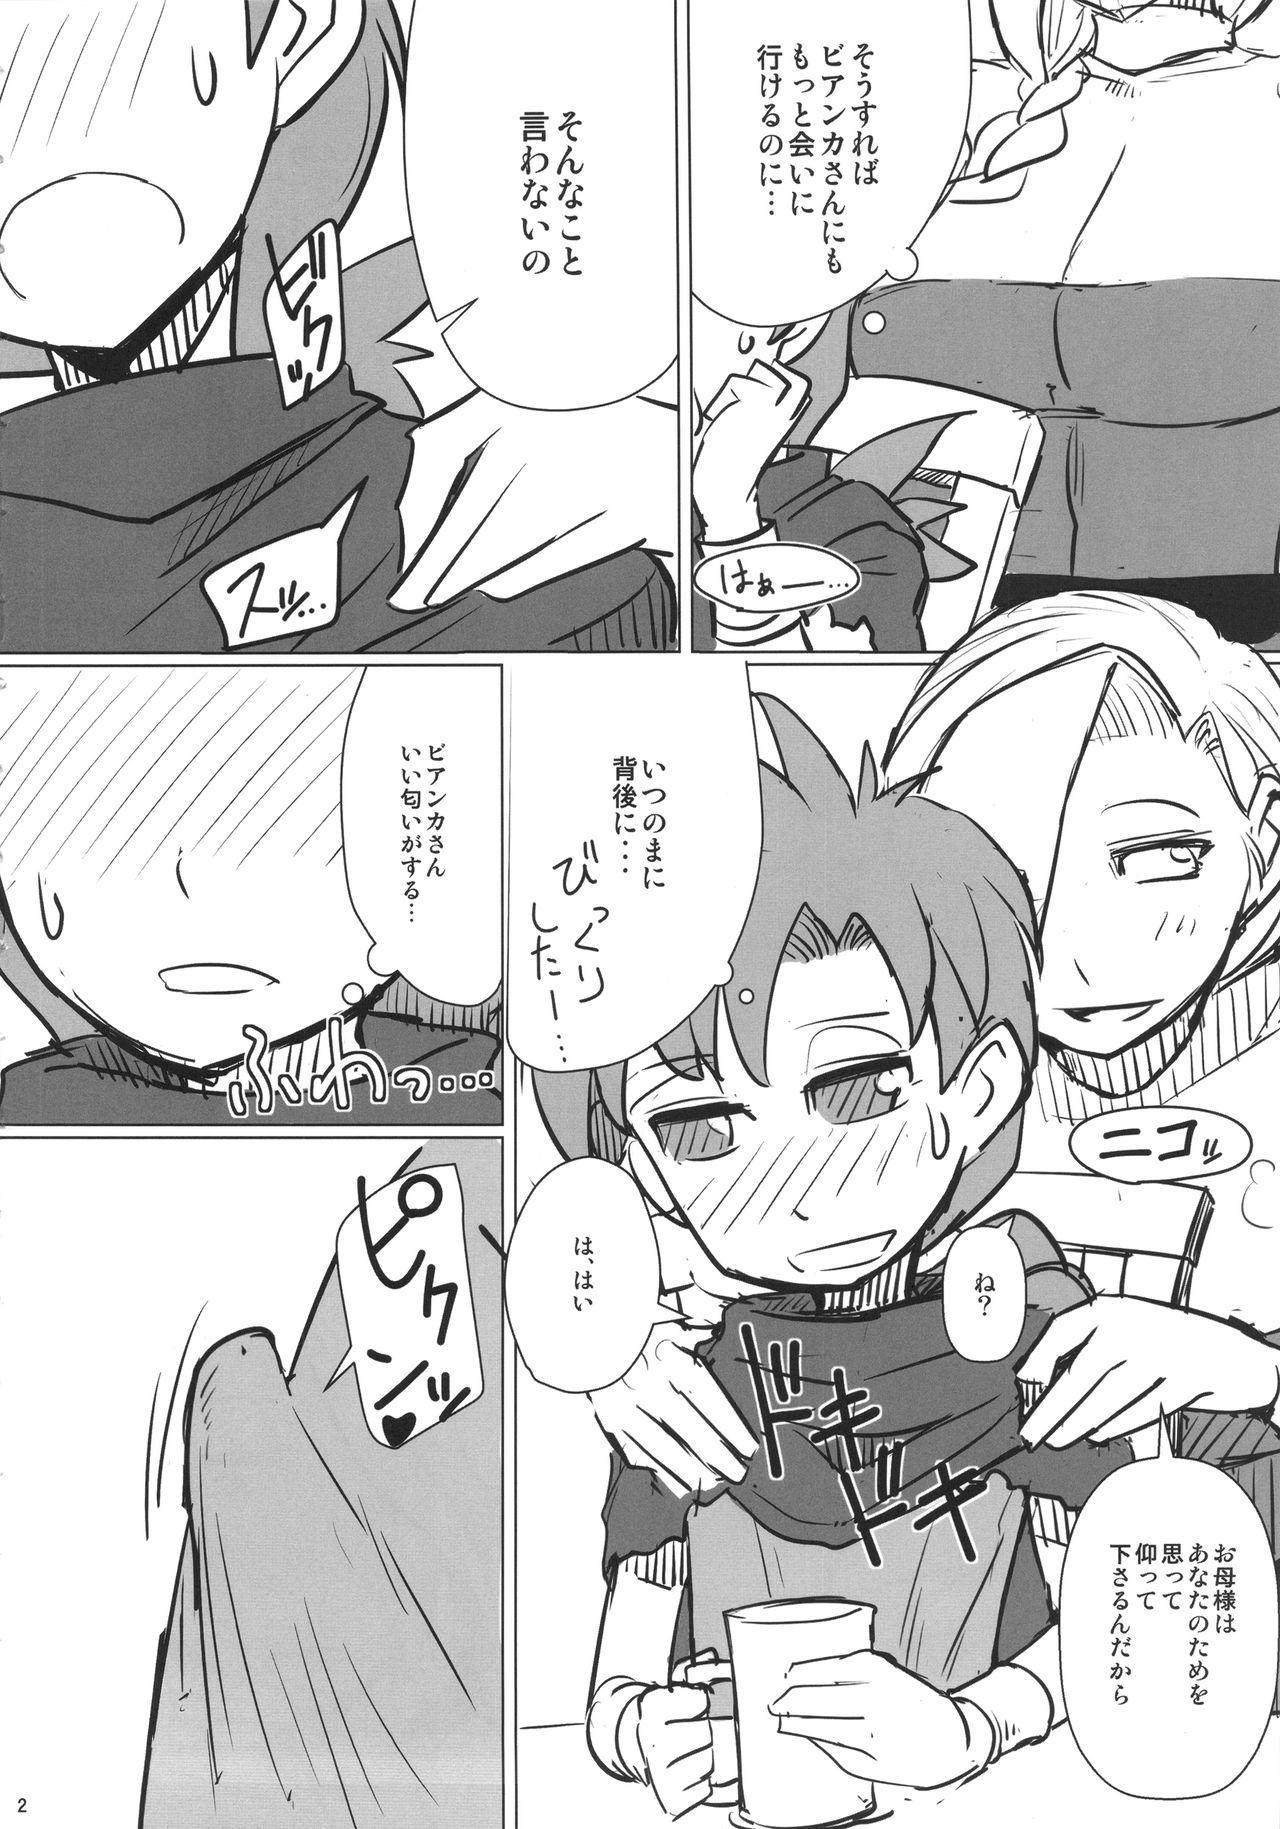 Sentando Yamaoku e Ikou! - Dragon quest v Style - Page 3